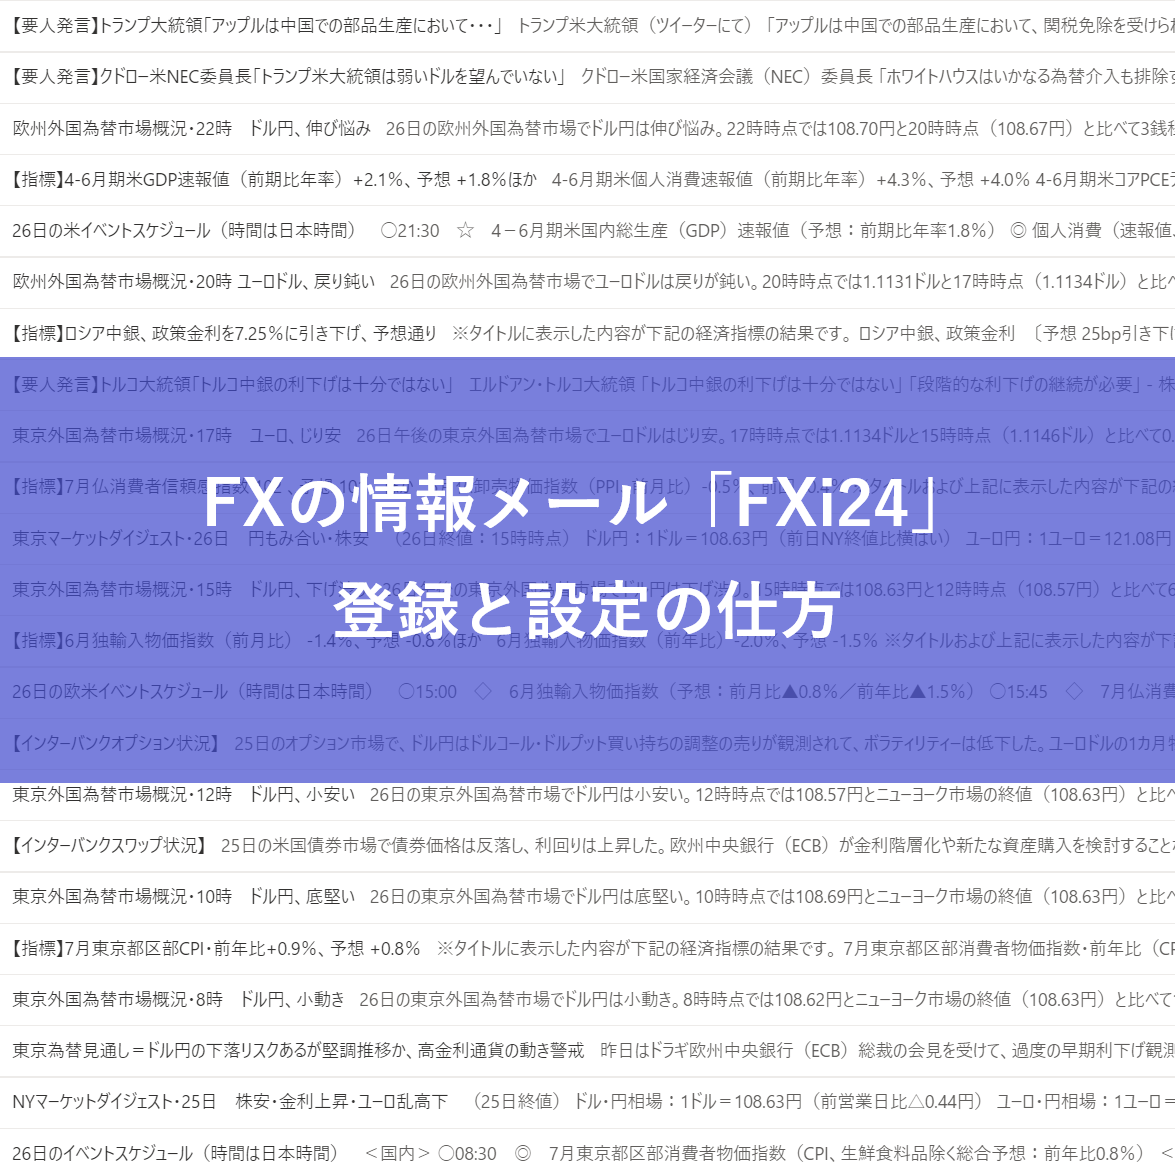 FXの情報メール「FXi24」登録と設定の仕方